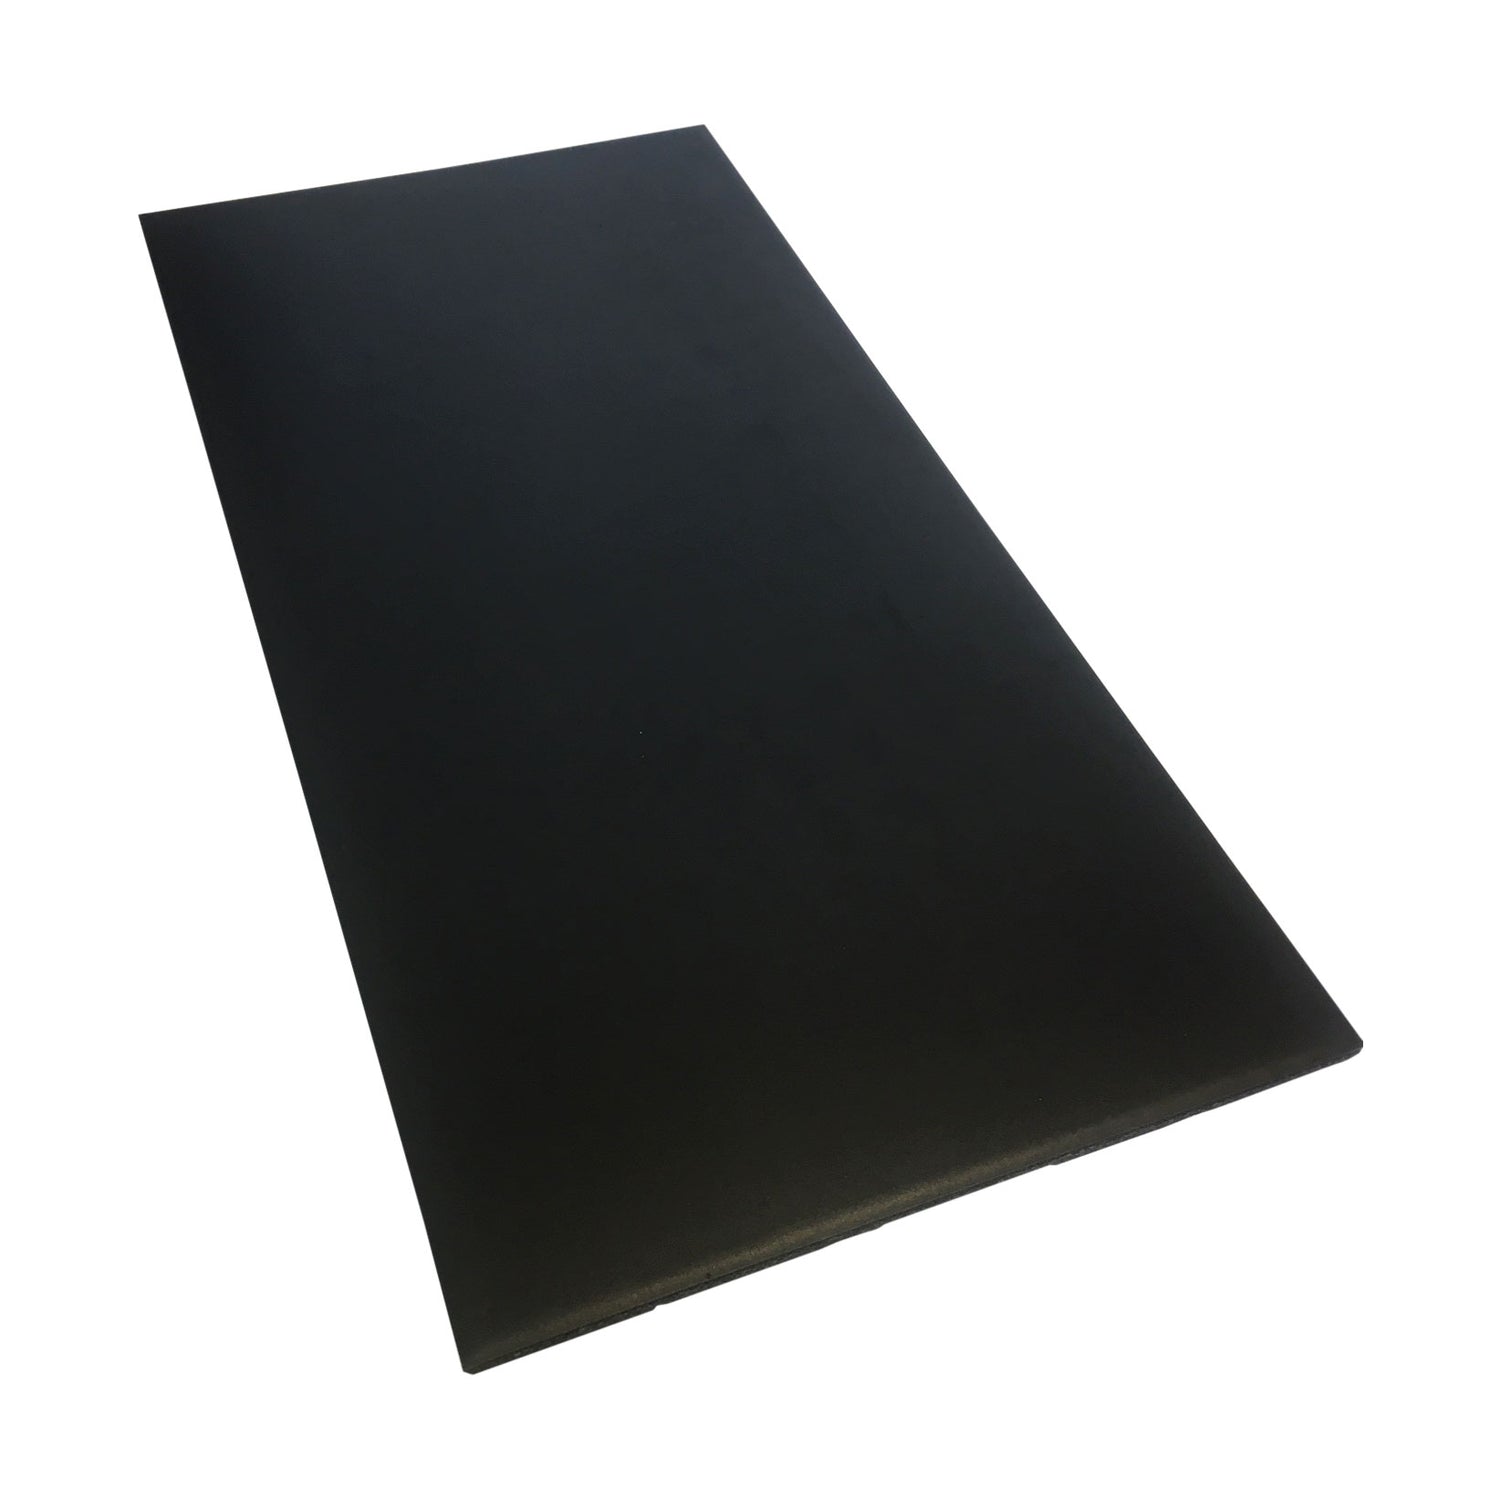 a black fitness gym mat